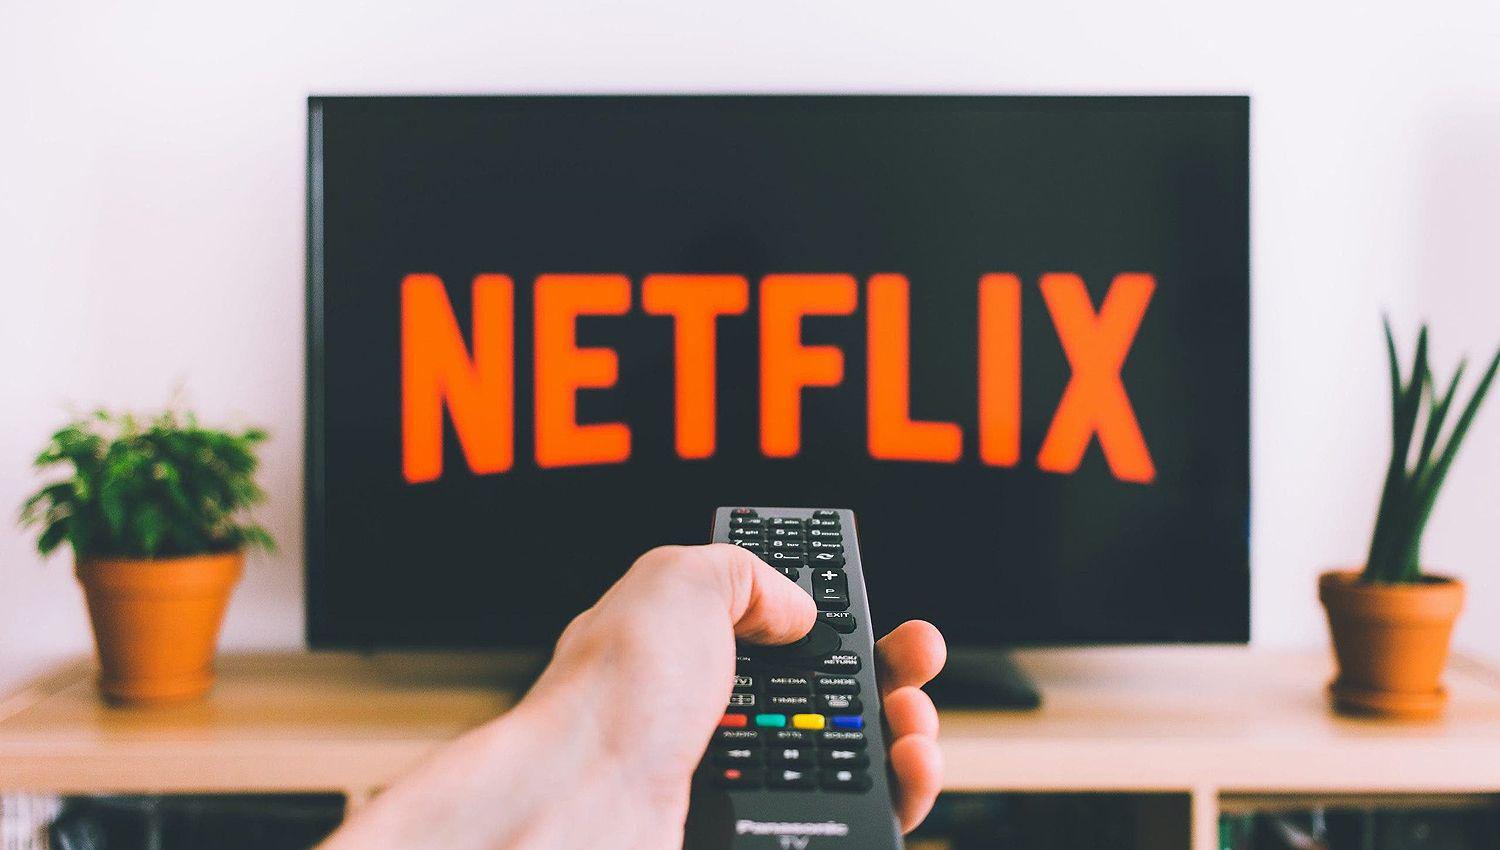 Servicios como Netflix y Spotify facturados en pesos no pagaraacuten el nuevo impuesto